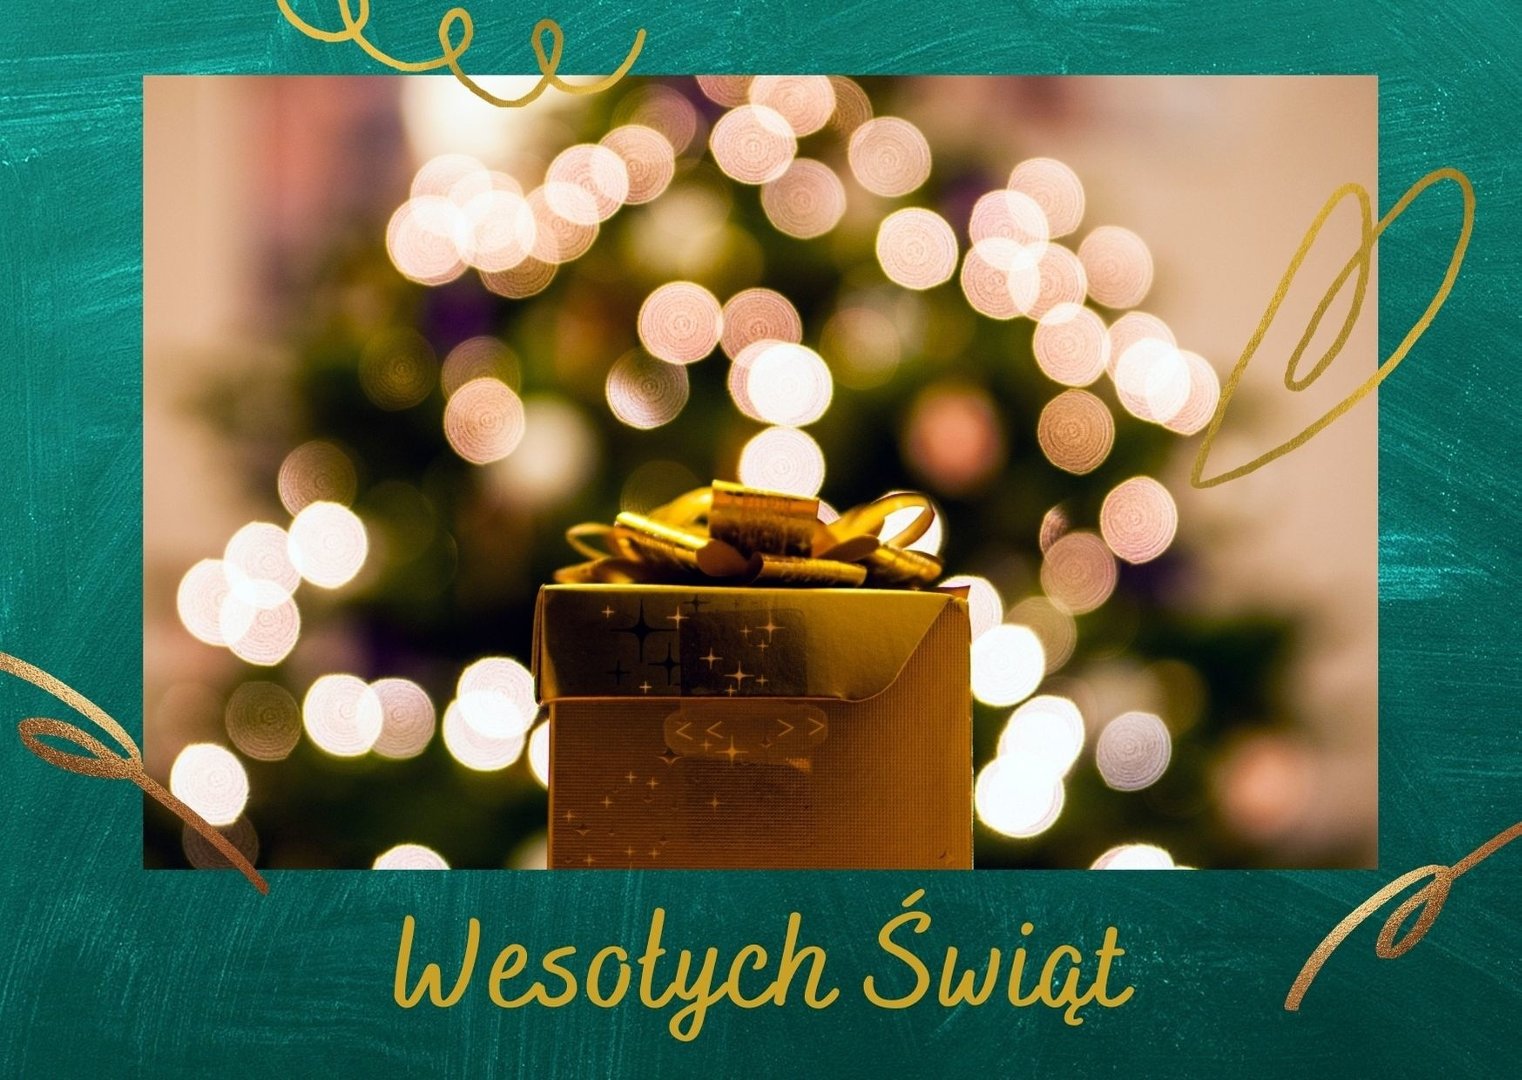 KARTKI bożonarodzeniowe 2021 do pobrania za darmo. Piękne kartki świąteczne  z życzeniami do wysłania SMS'em 27.12.21 | Gazeta Krakowska